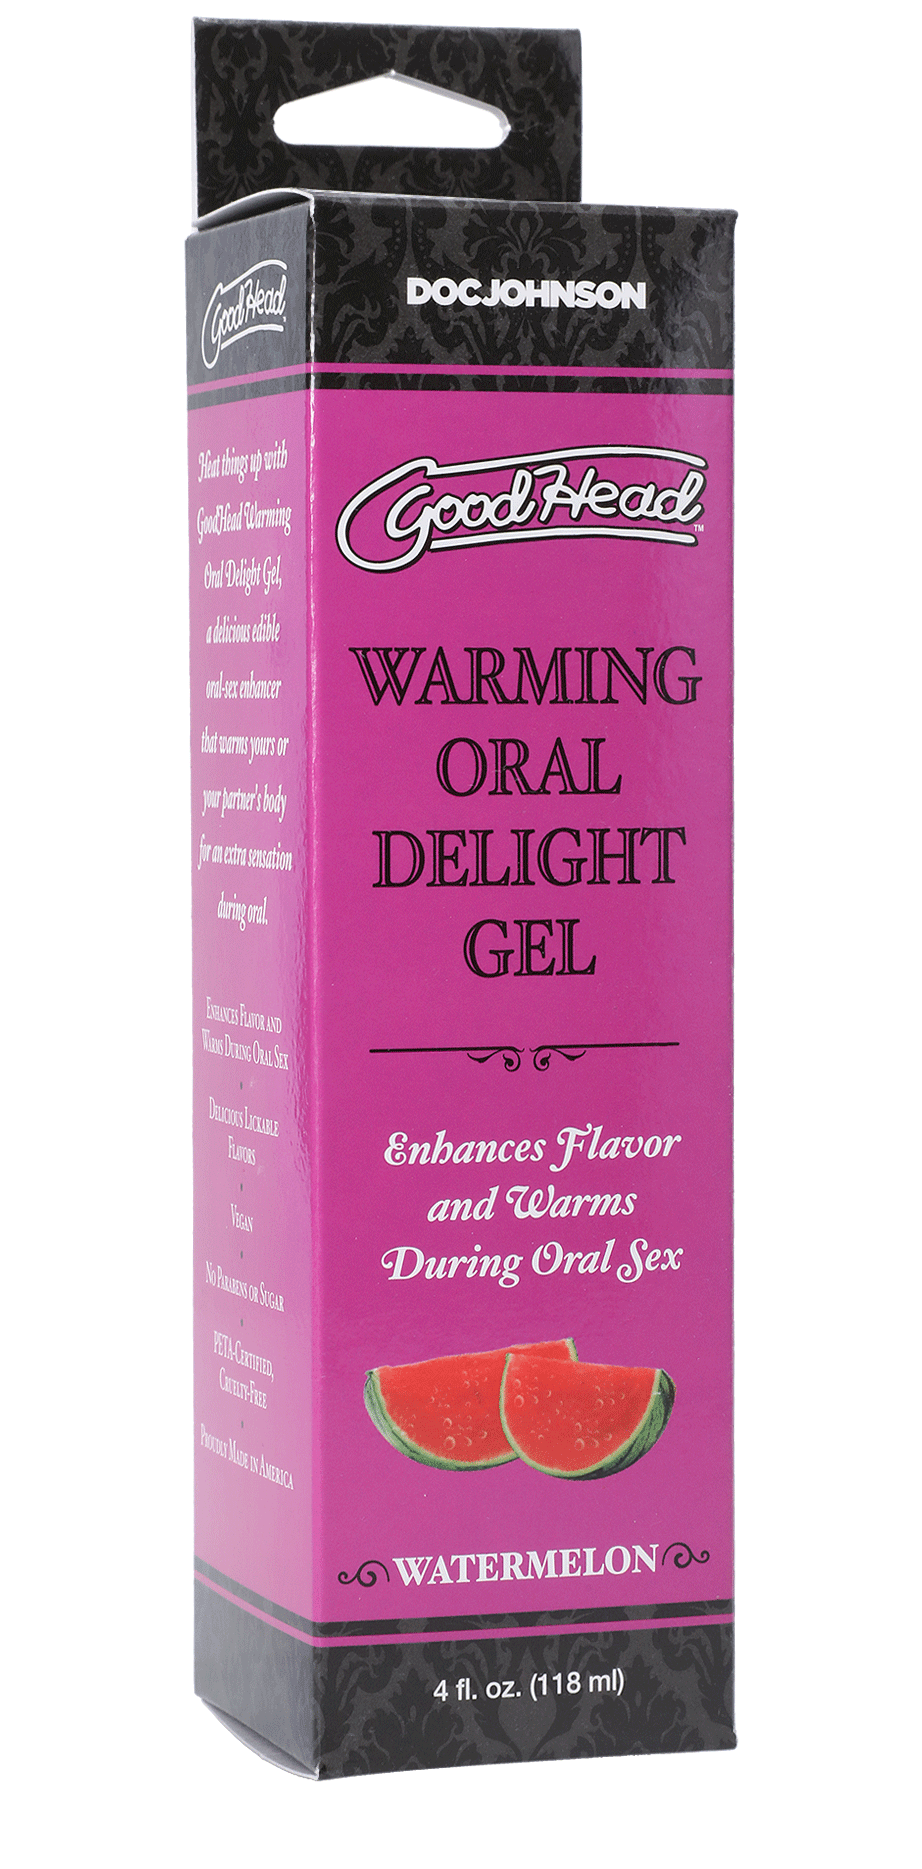 Goodhead - Warming Oral Delight Gel - Watermelon - 4 Fl. Oz. - My Sex Toy Hub